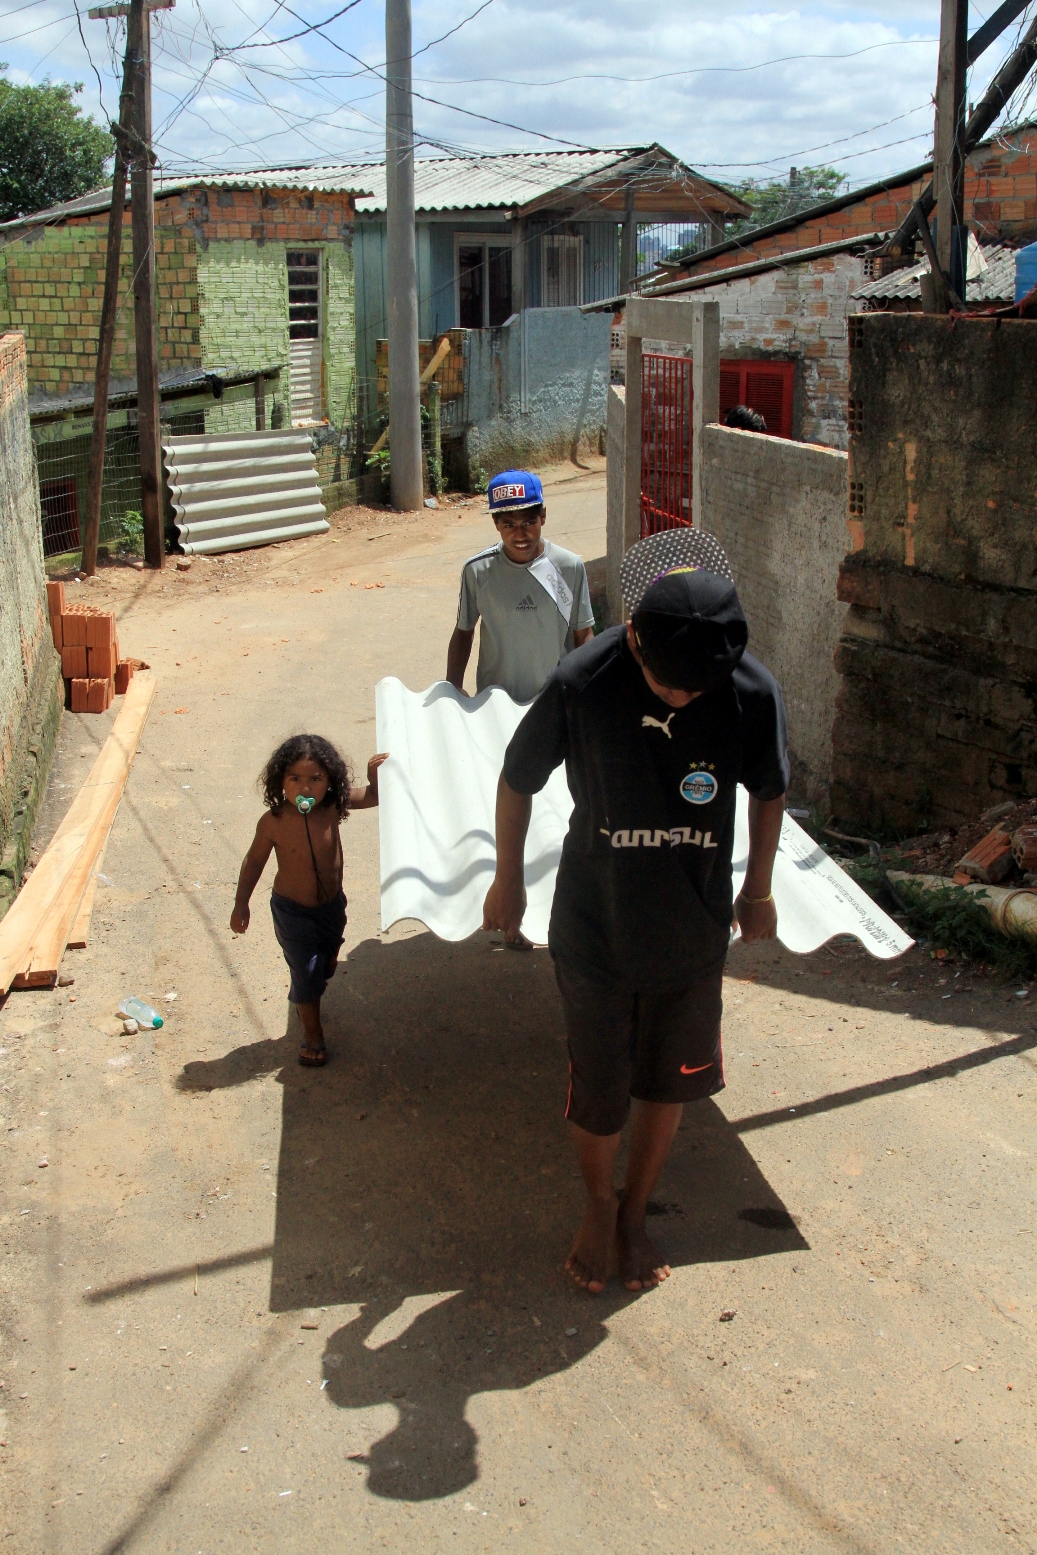 Ensaio fotográfico de Igor Sperotto em ocupações da região metropolitana de Porto Alegre mostra a humanização de locais estigmatizados por parte da imprensa gaúcha